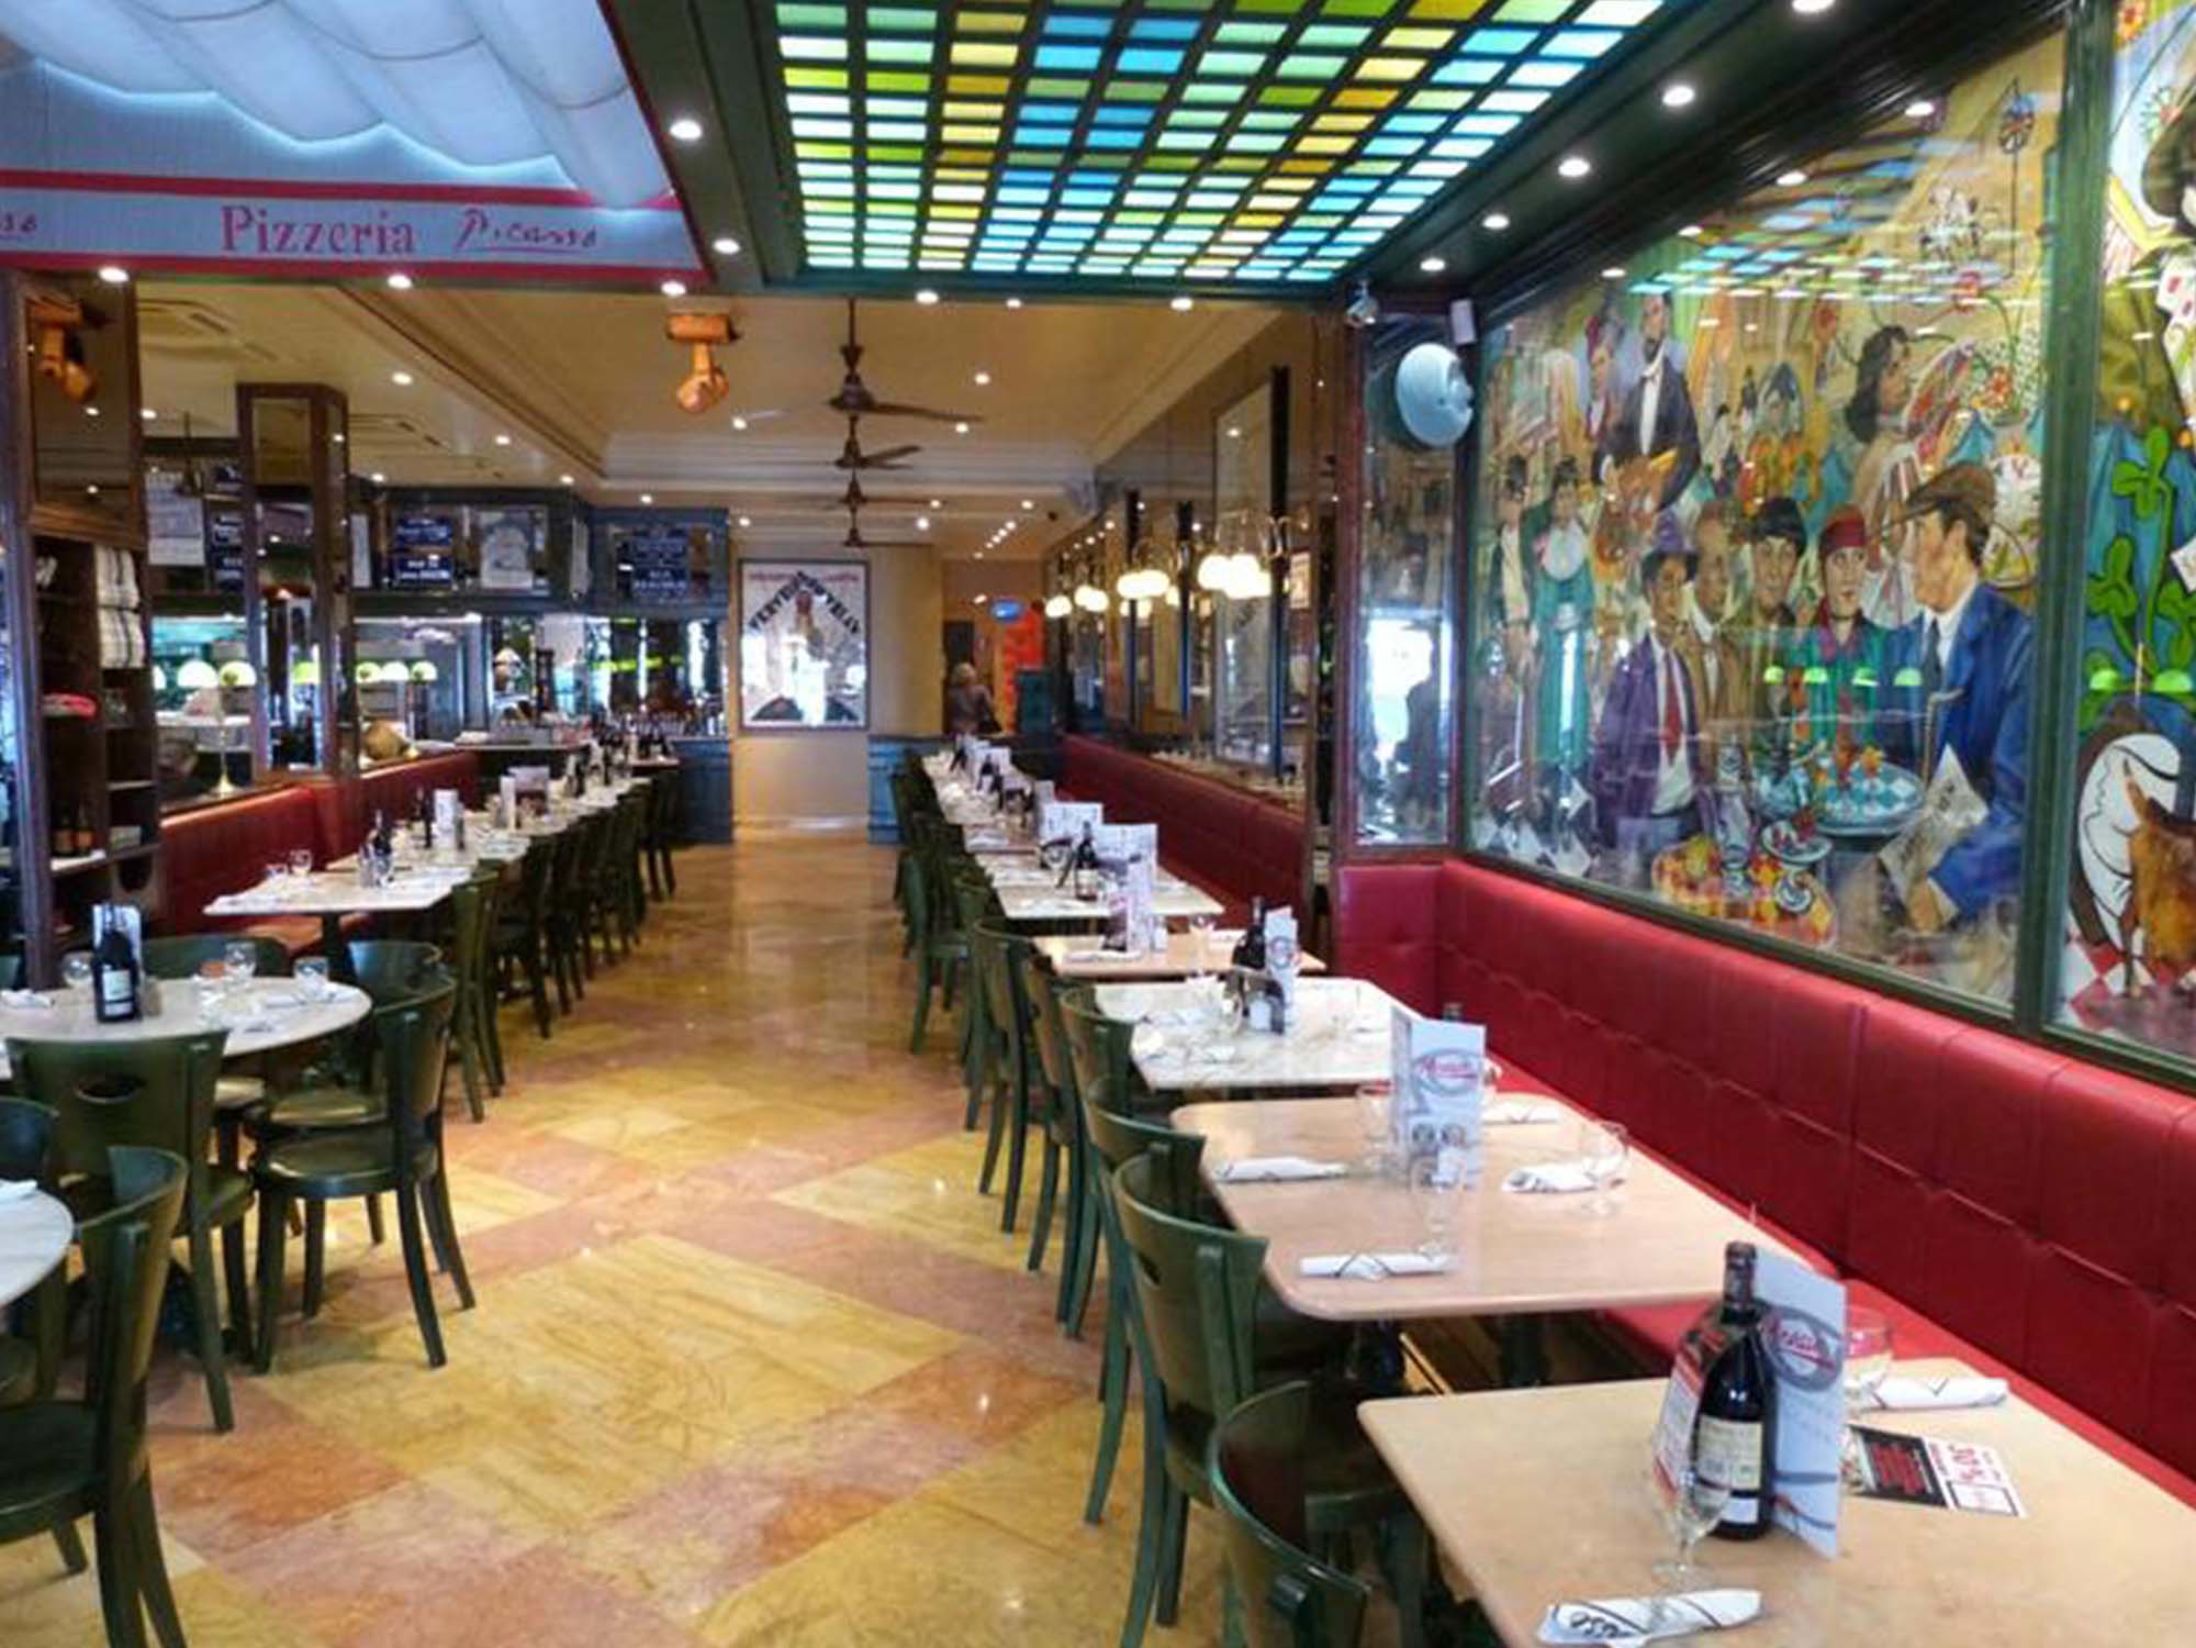 Best Restaurants in Marbella - Pizzeria Picasso